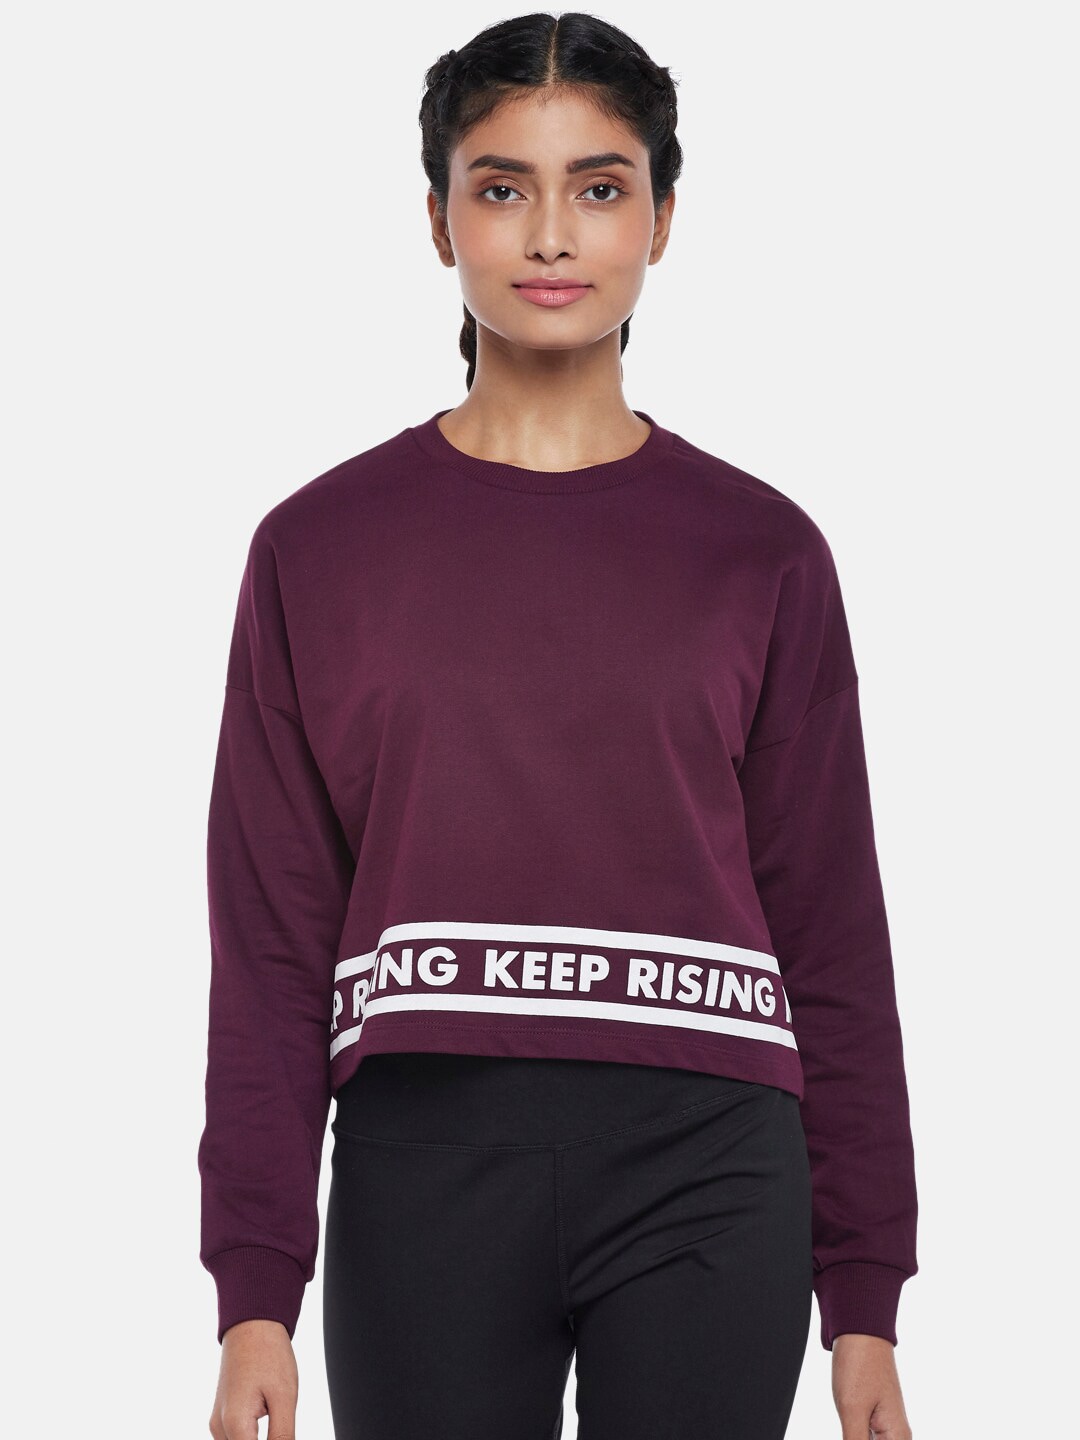 Ajile by Pantaloons Women Purple Printed Sweatshirt Price in India